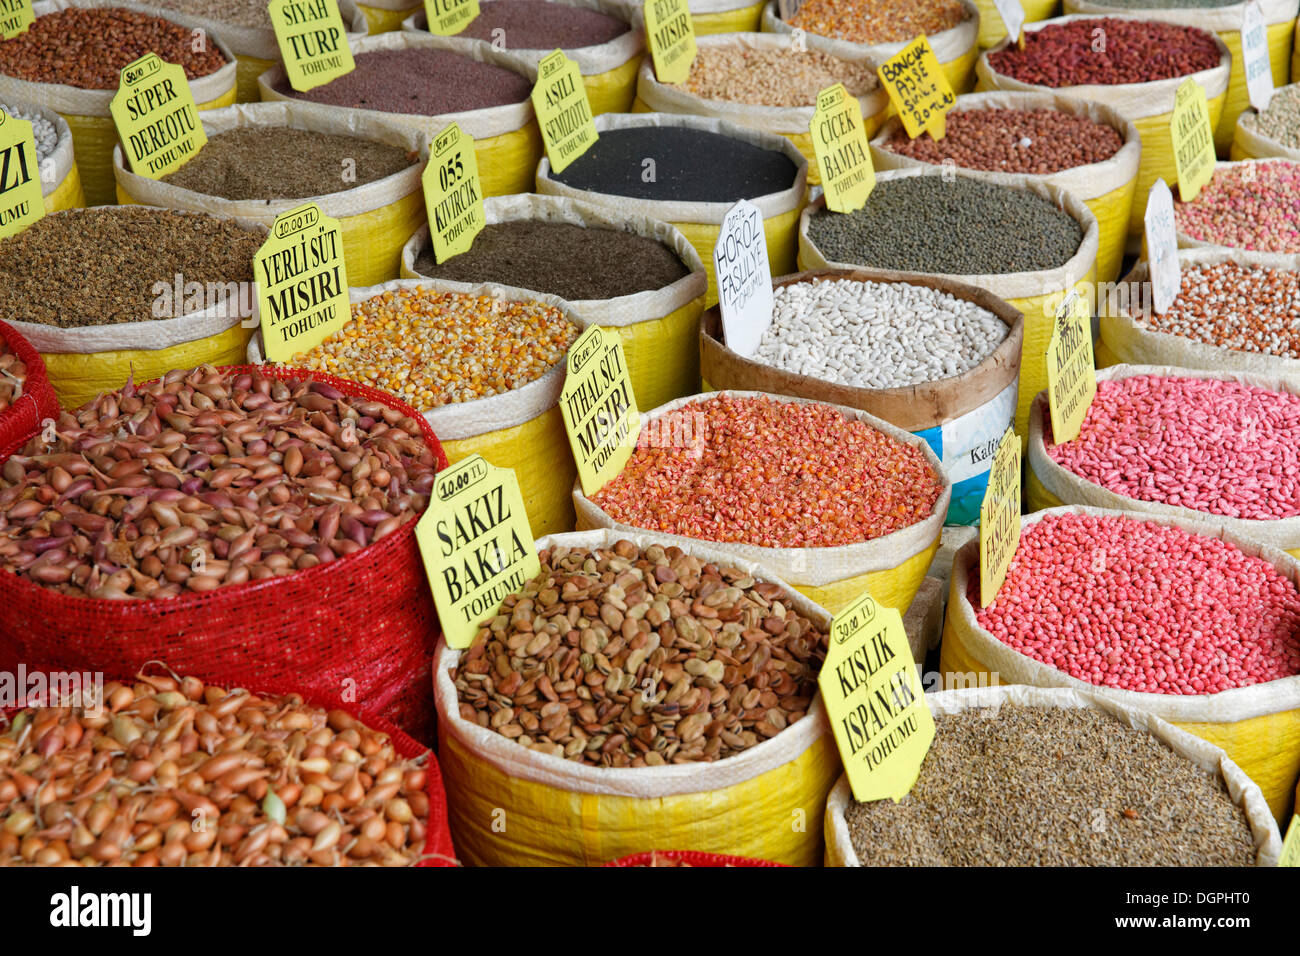 Divers les haricots et le maïs dans des sacs, Bazar égyptien, ou marché aux épices, Misir Çarşısı, Eminönü, Istanbul, côté Européen Banque D'Images